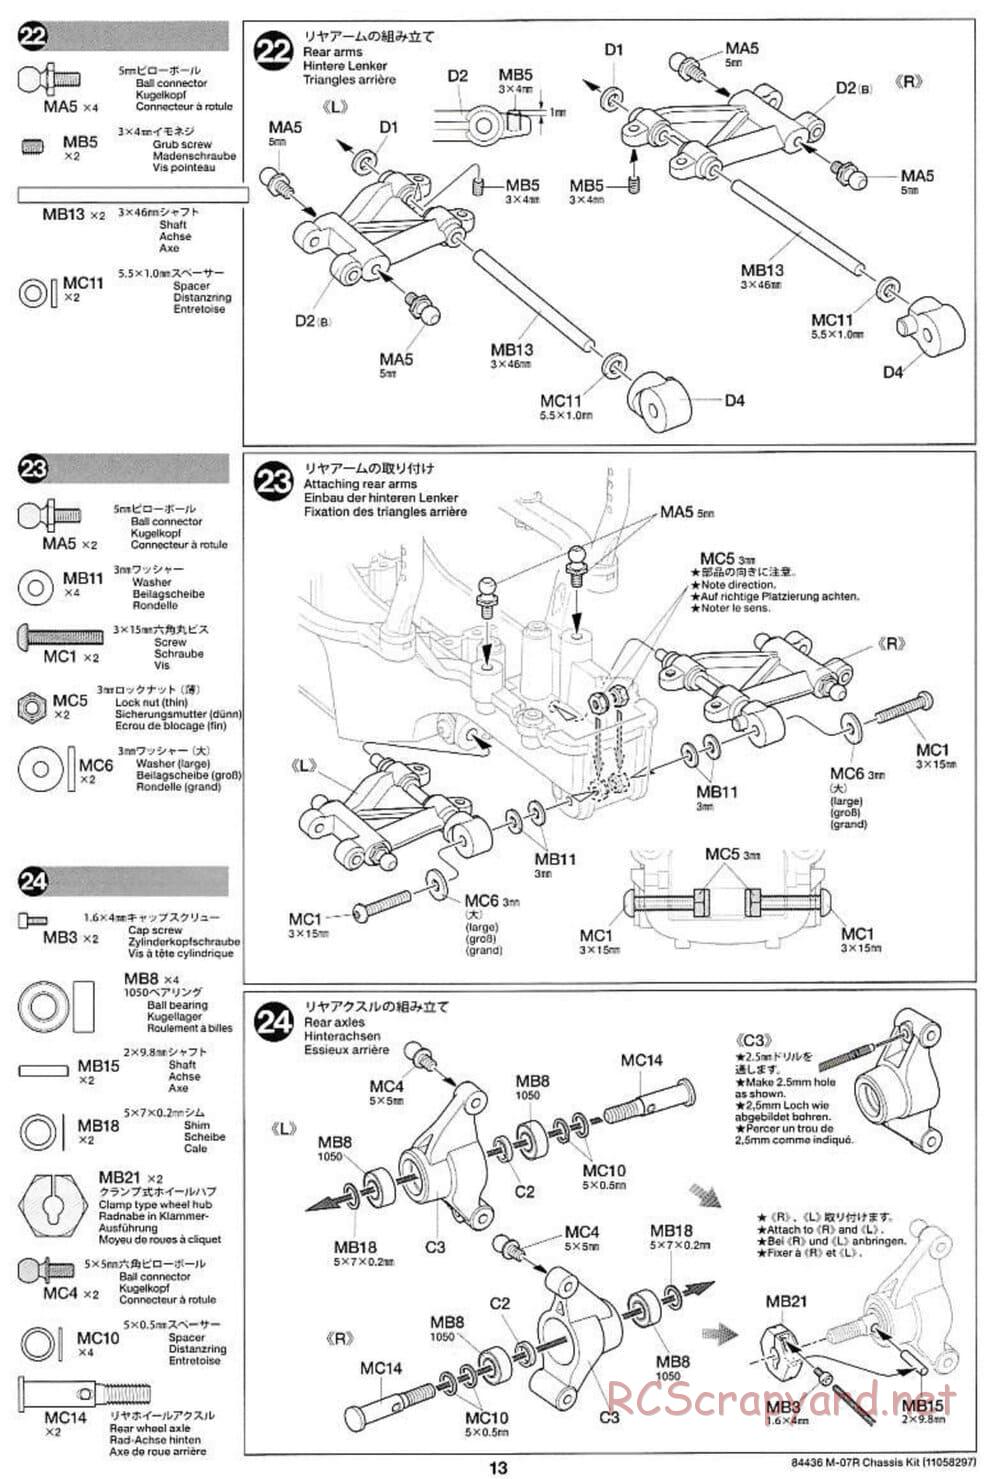 Tamiya - M-07R Chassis - Manual - Page 13